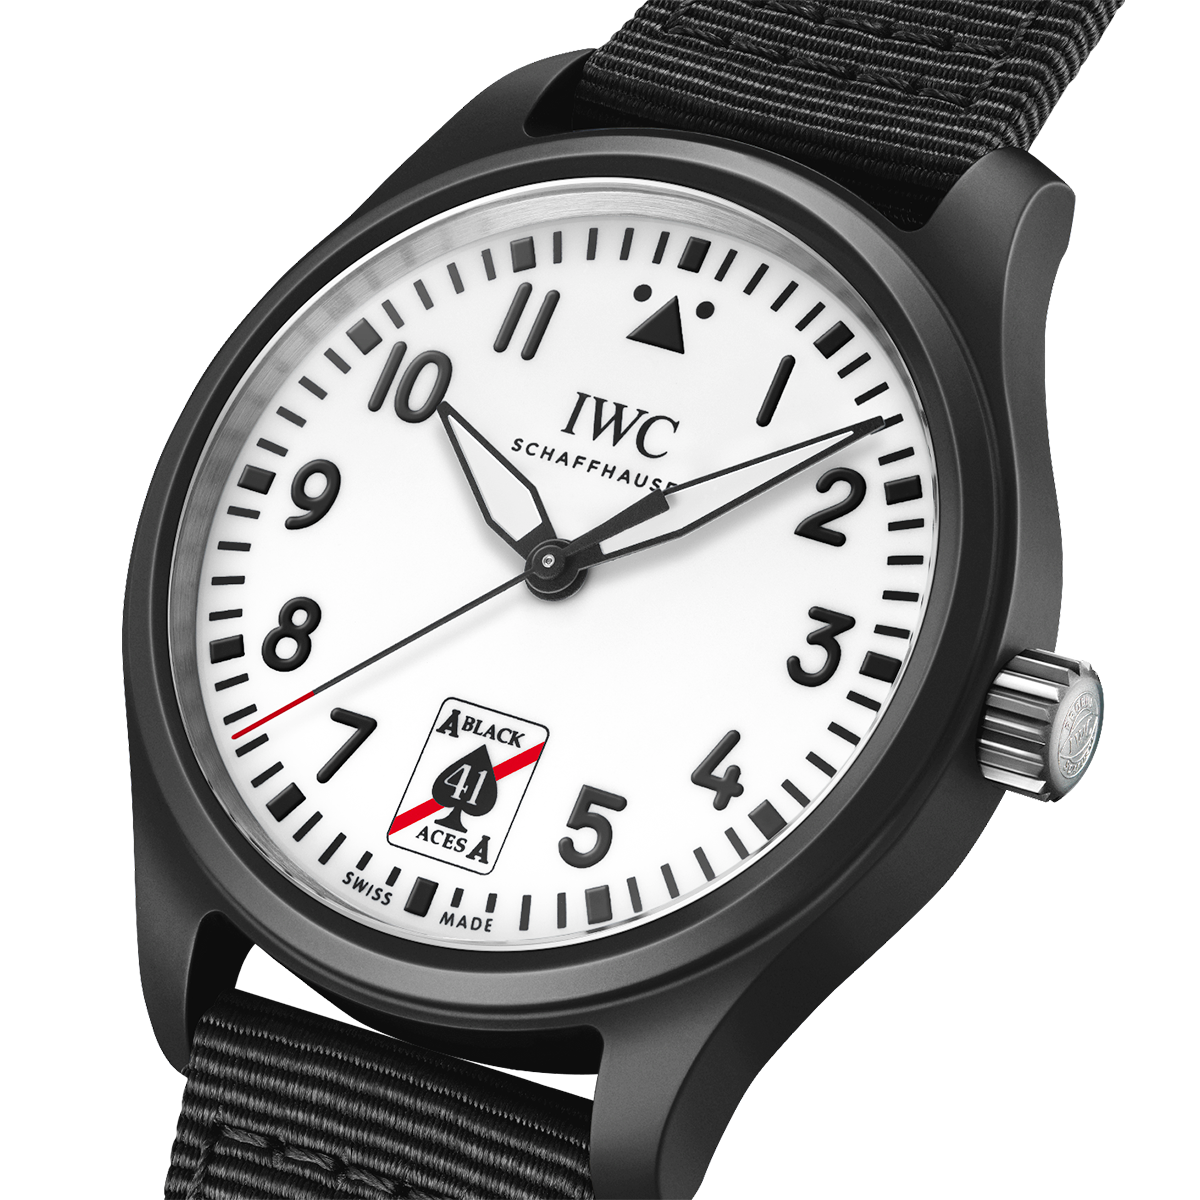 Pilot's Black Aces Edition 41mm Black Ceramic Automatic Watch